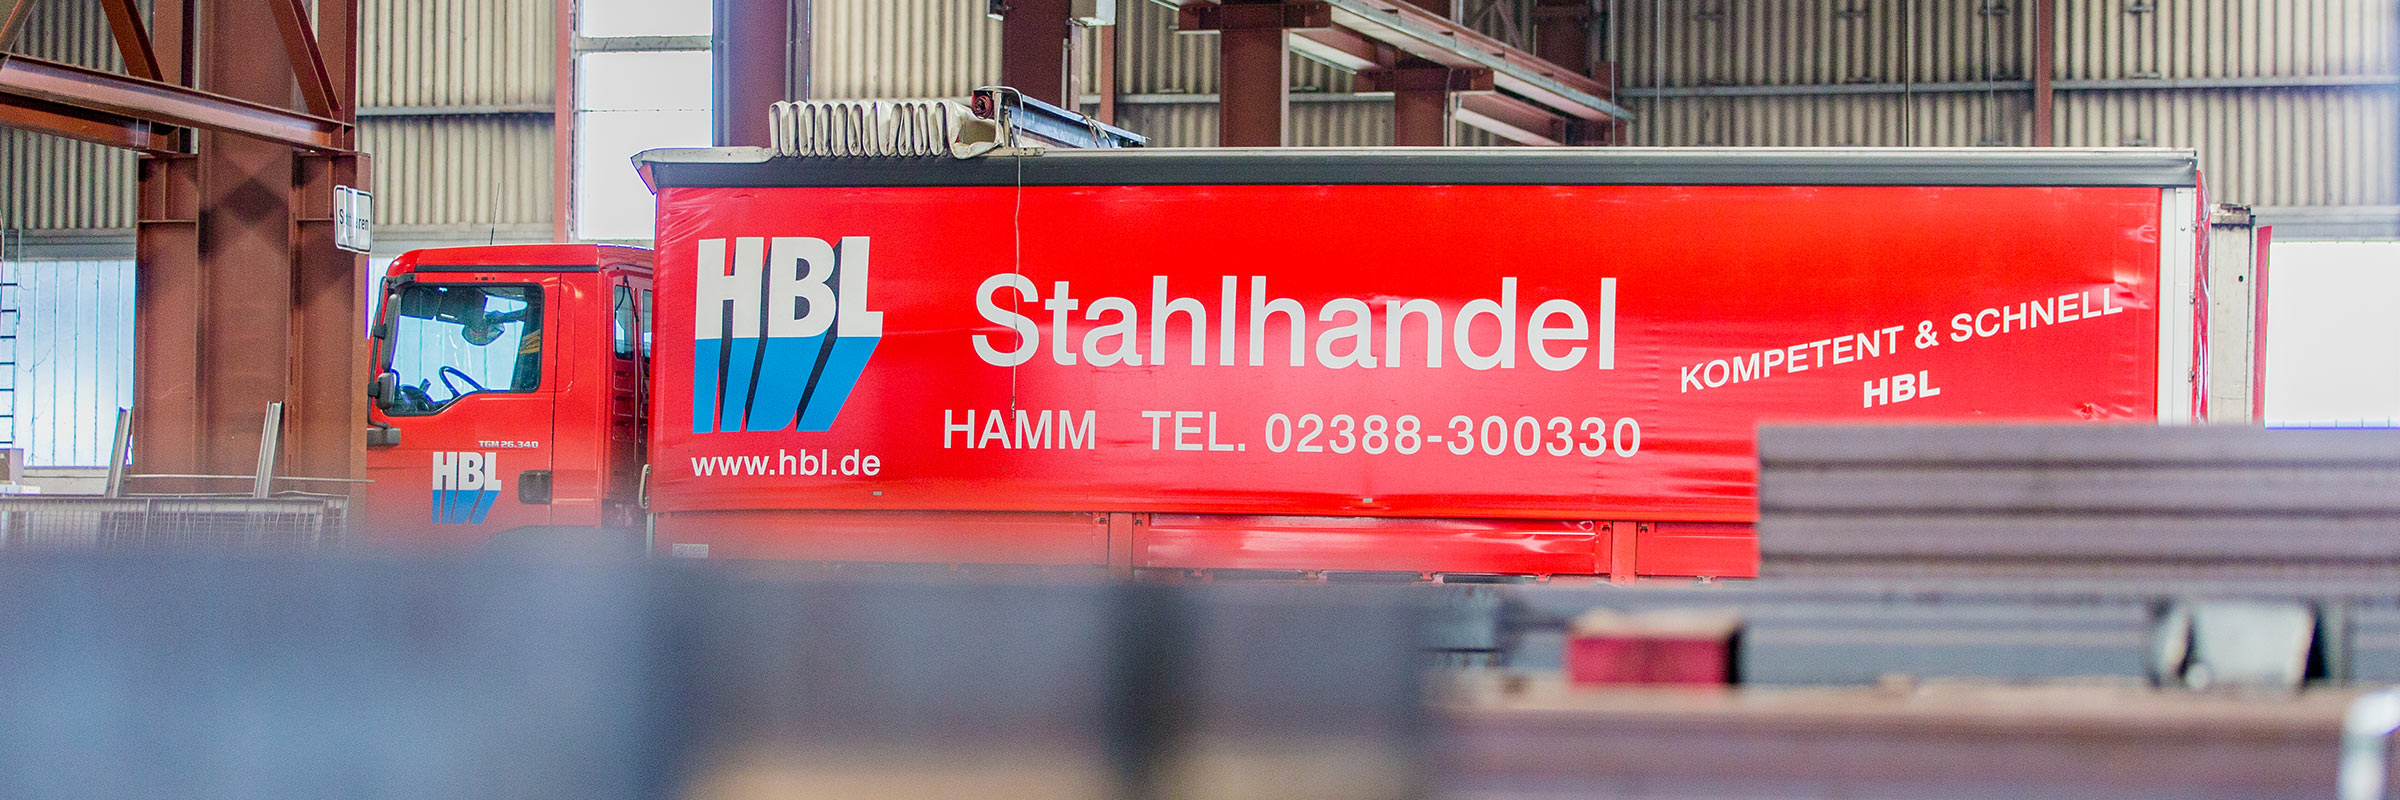 HBL Stahlhandel